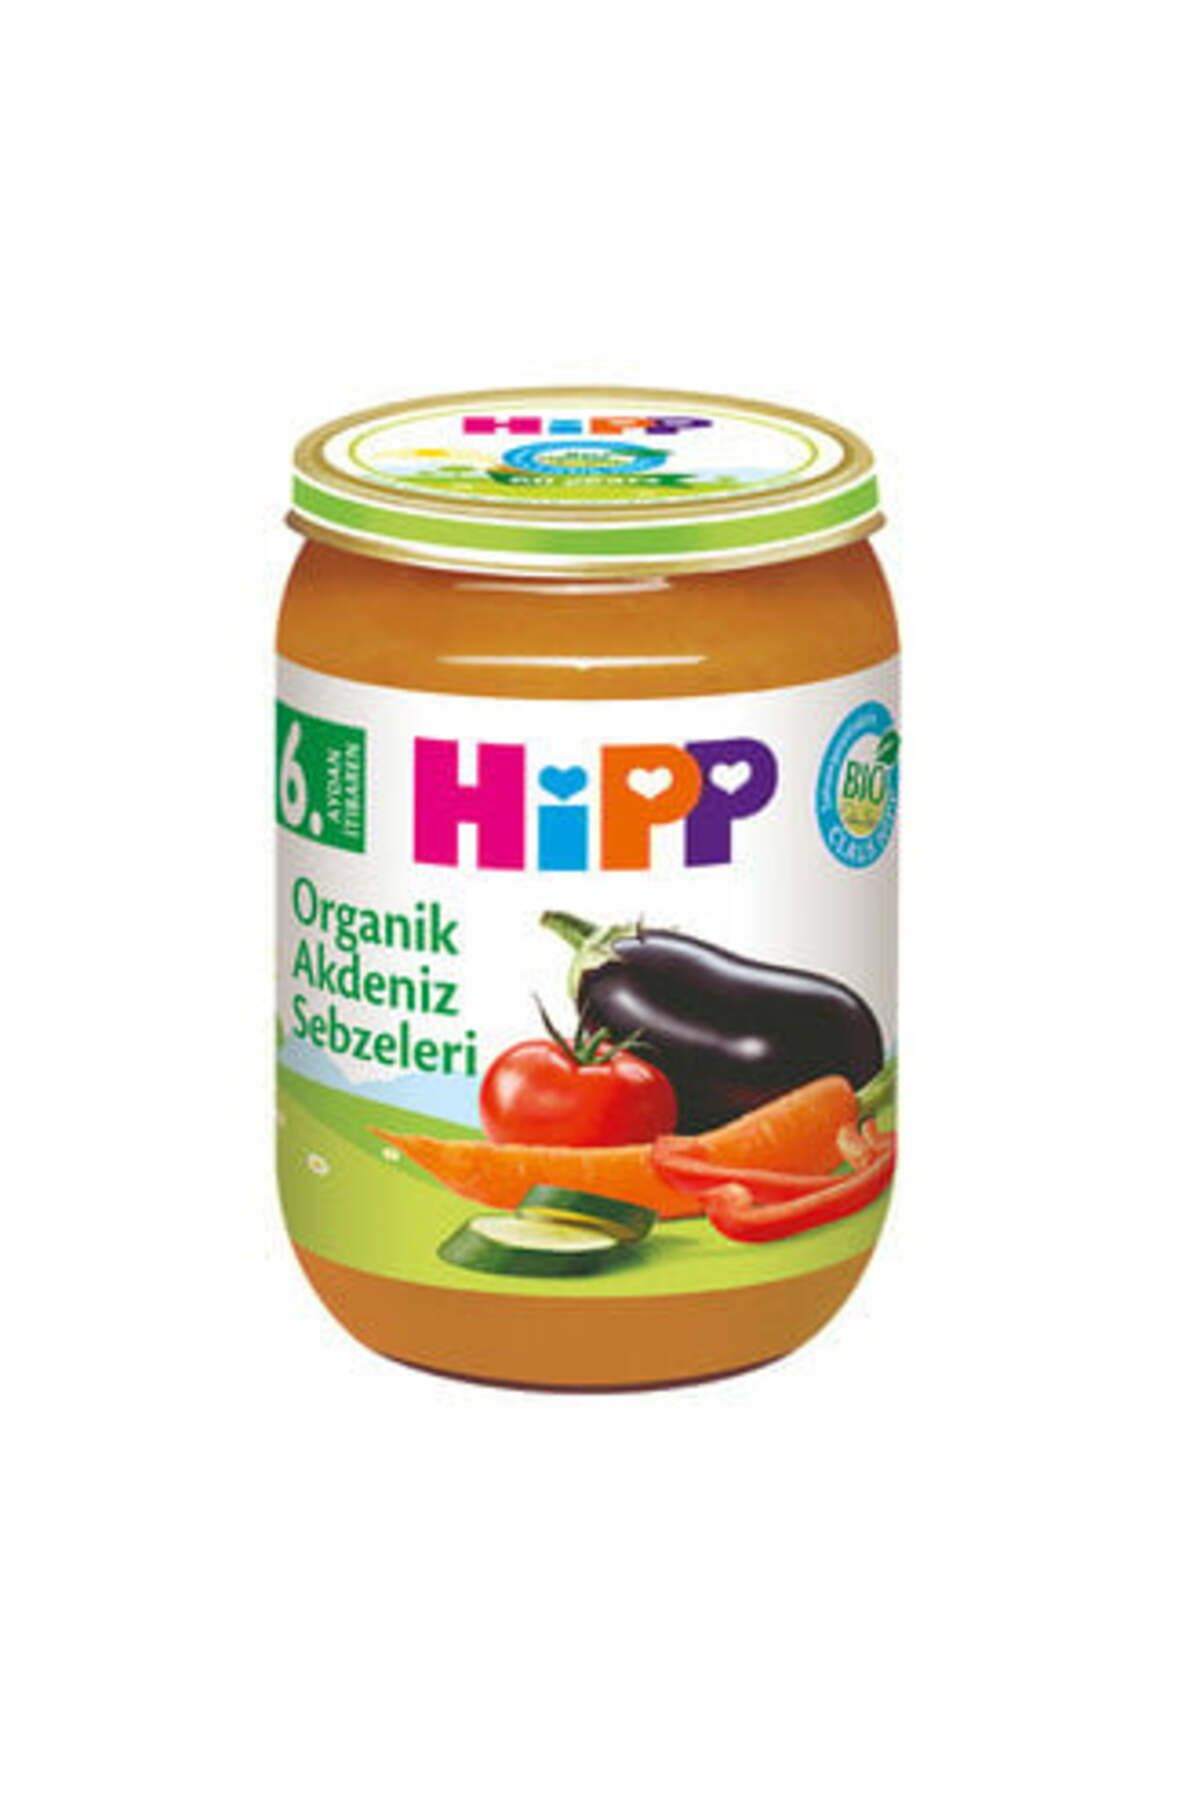 Hipp Organik Akdeniz Sebzeleri 190 G ( 1 ADET )